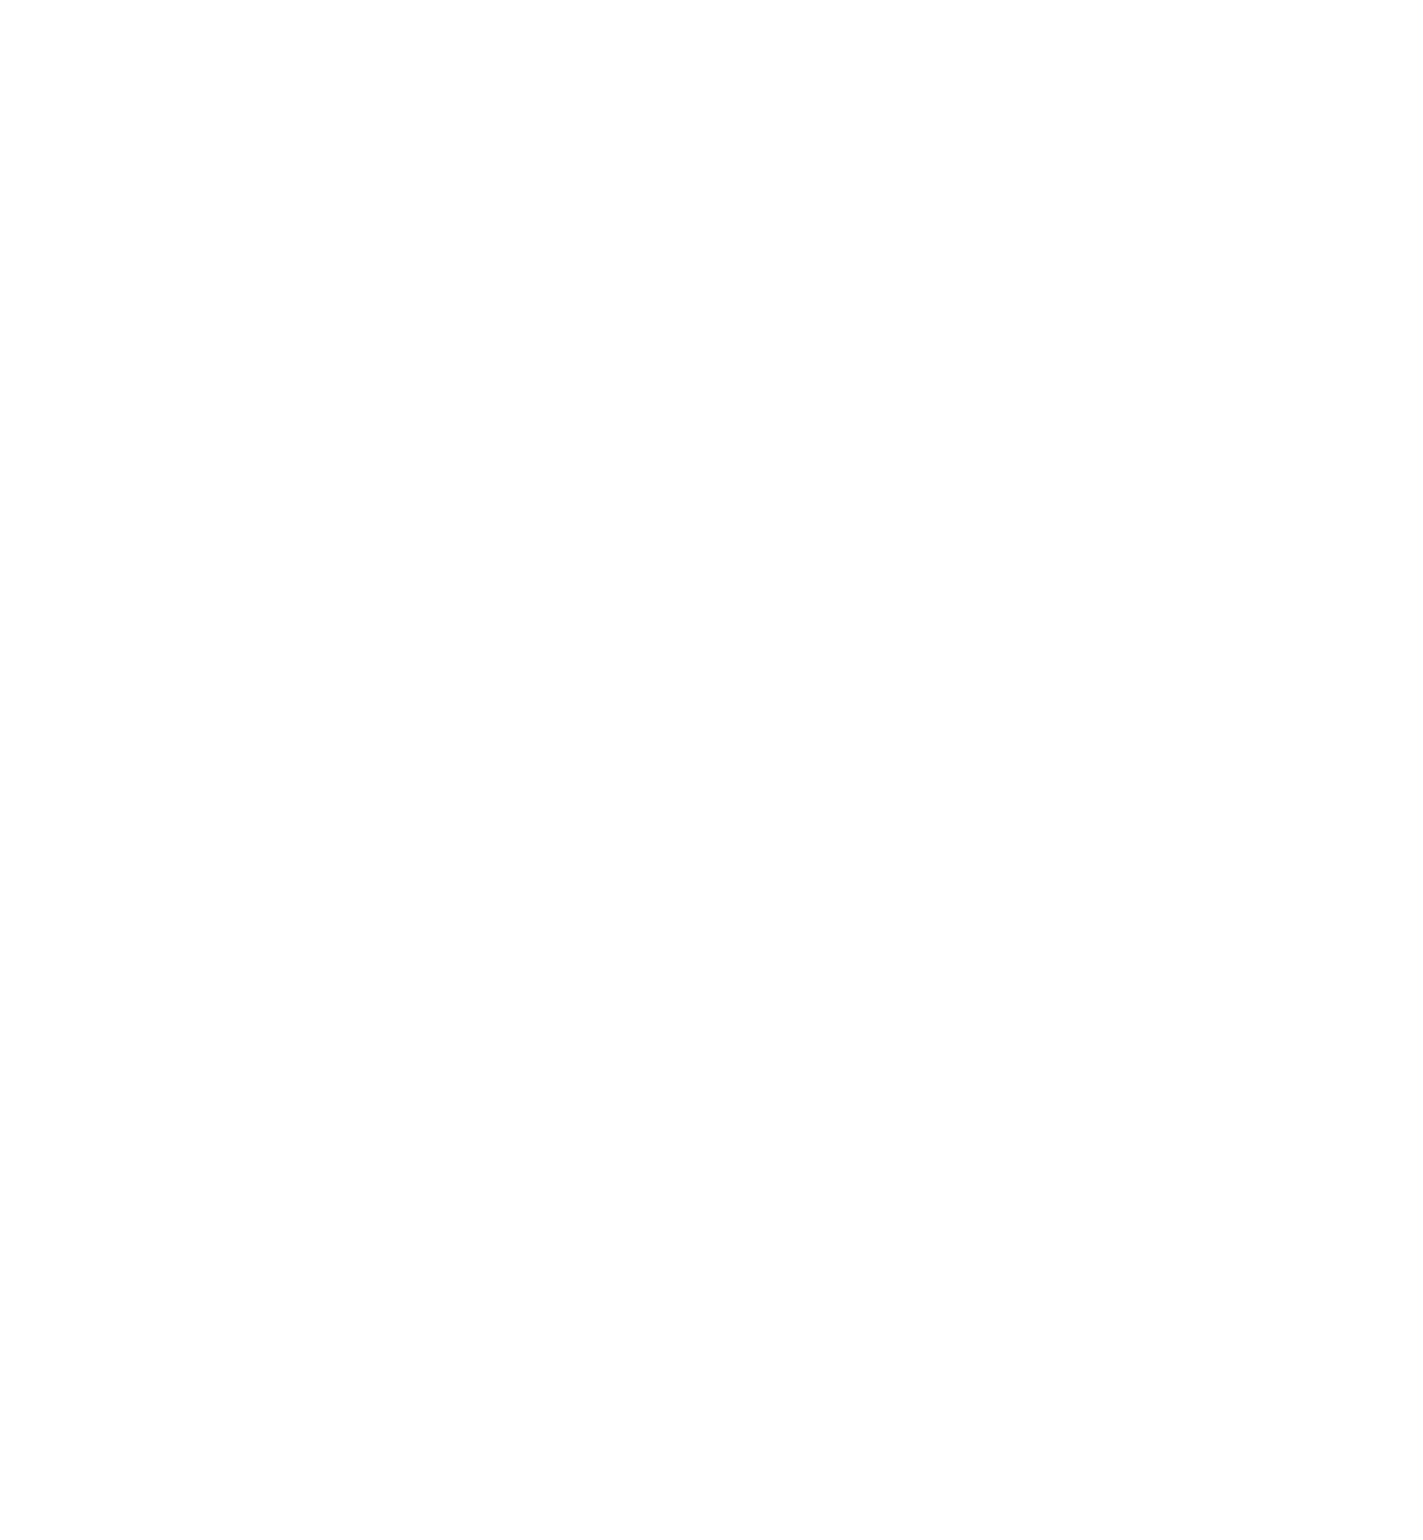 Cencora logo for dark backgrounds (transparent PNG)